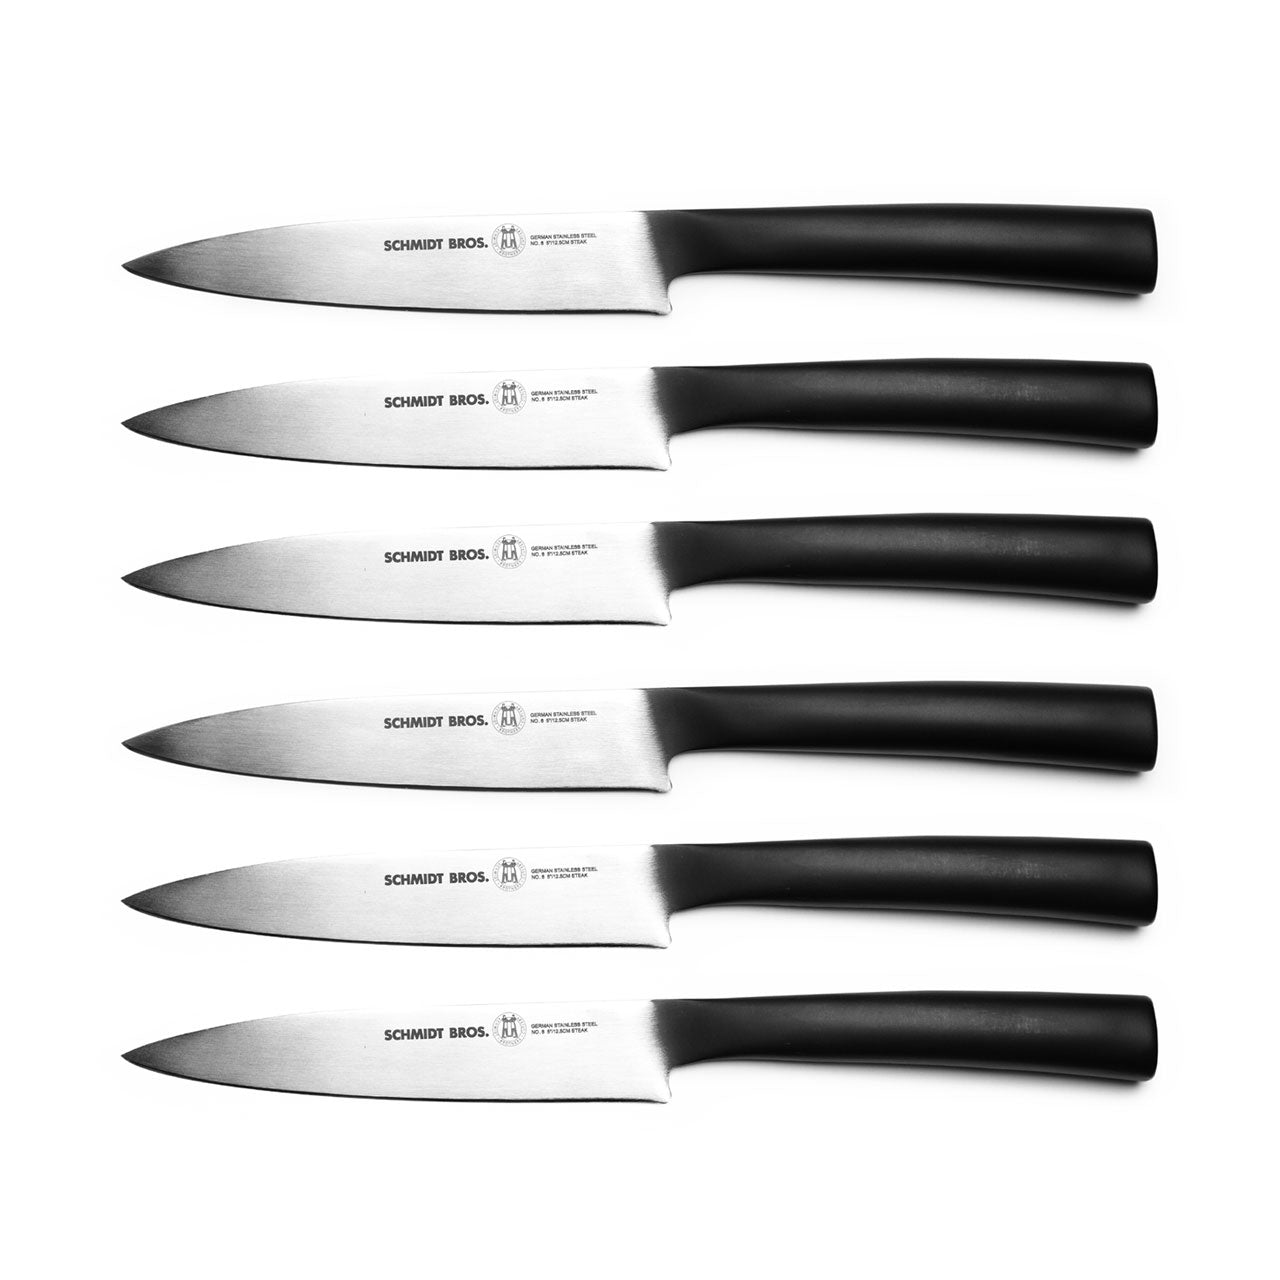 Schmidt Bros. Carbon Steak Knife Set